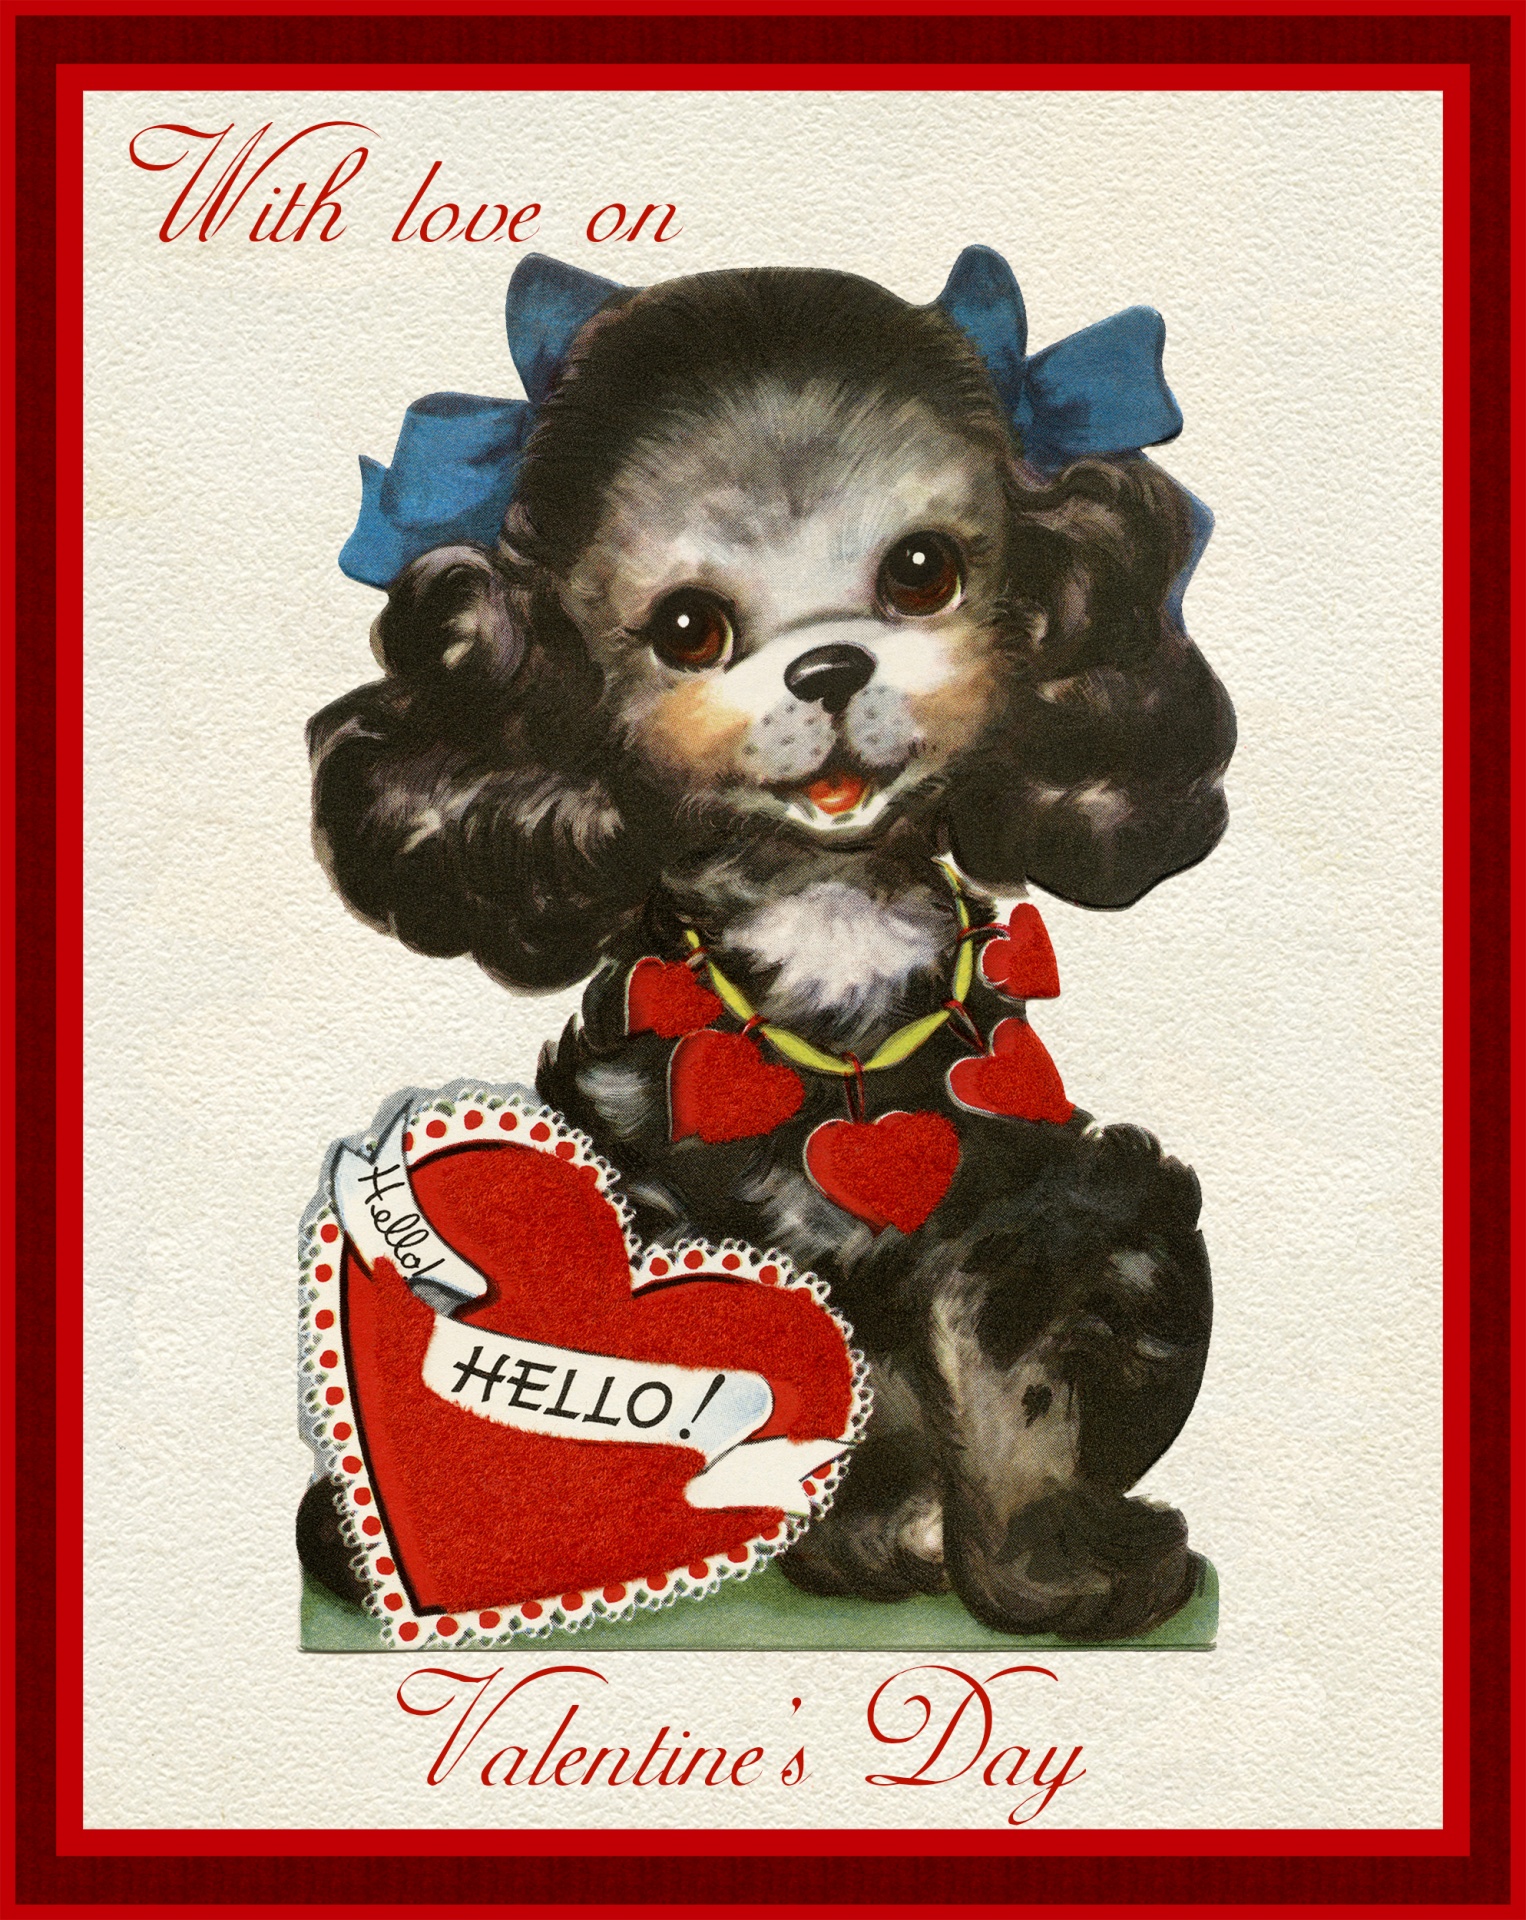 Retro vintage poodle dog valentine card template